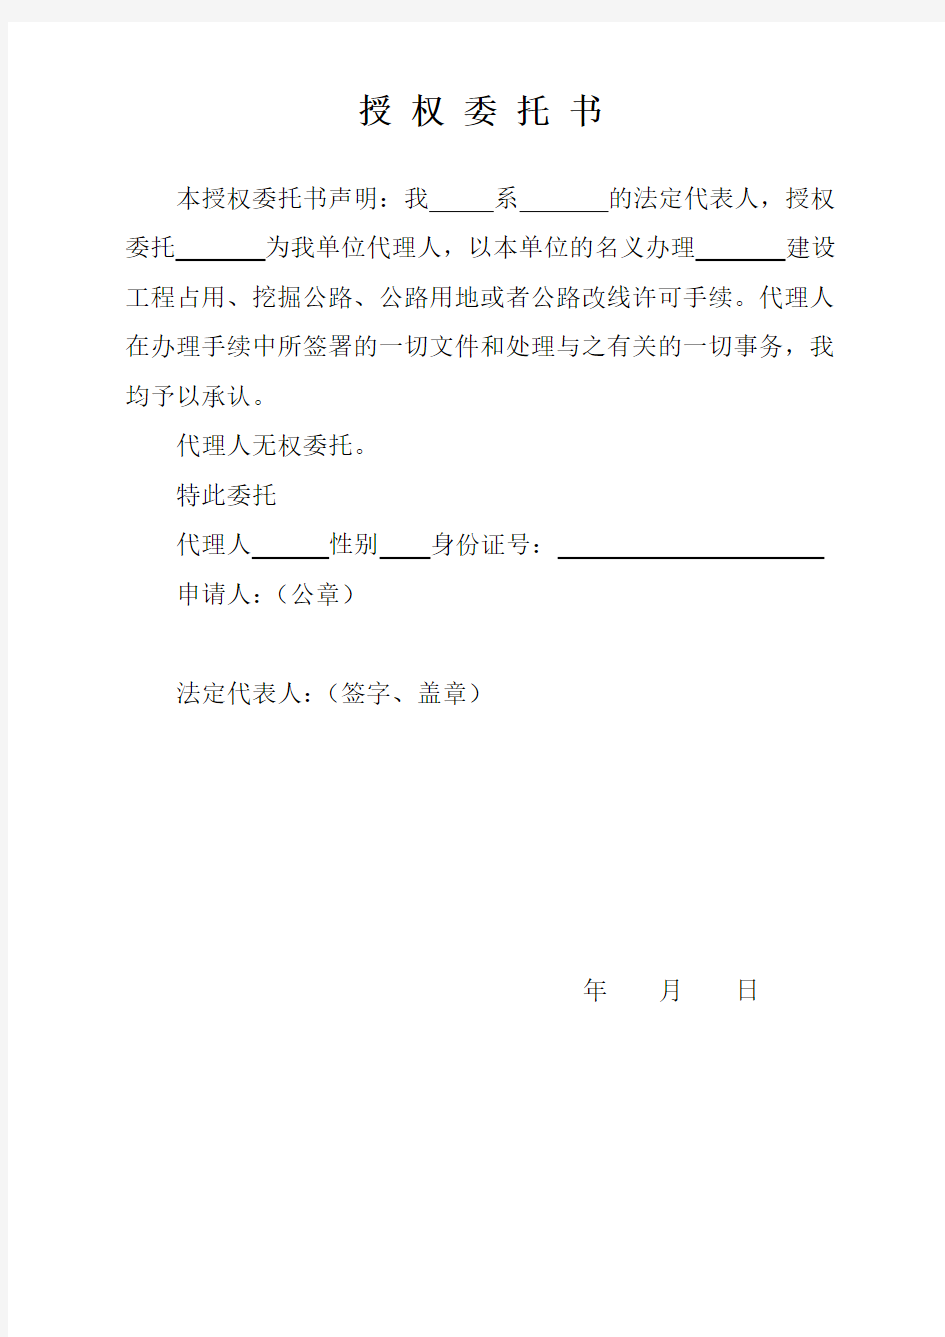 北京市交通委员会路政局行政许可申请表(A)